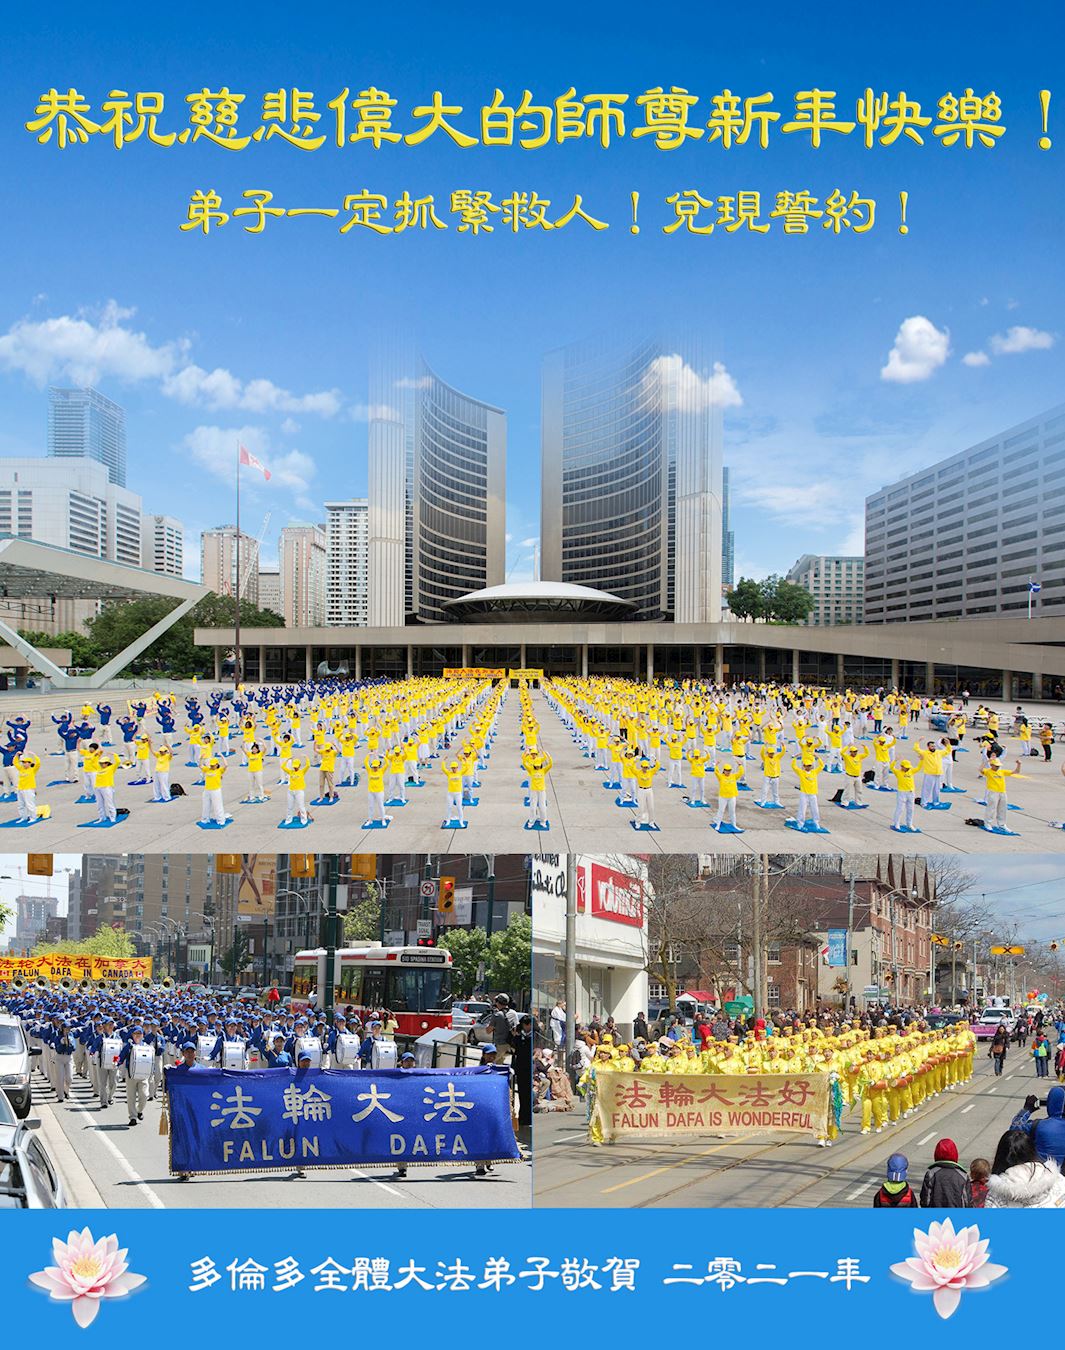 Image for article Toronto: praticantes desejam ao honorável Mestre um Feliz Ano Novo Chinês e refletem sobre o impacto positivo do Falun Dafa